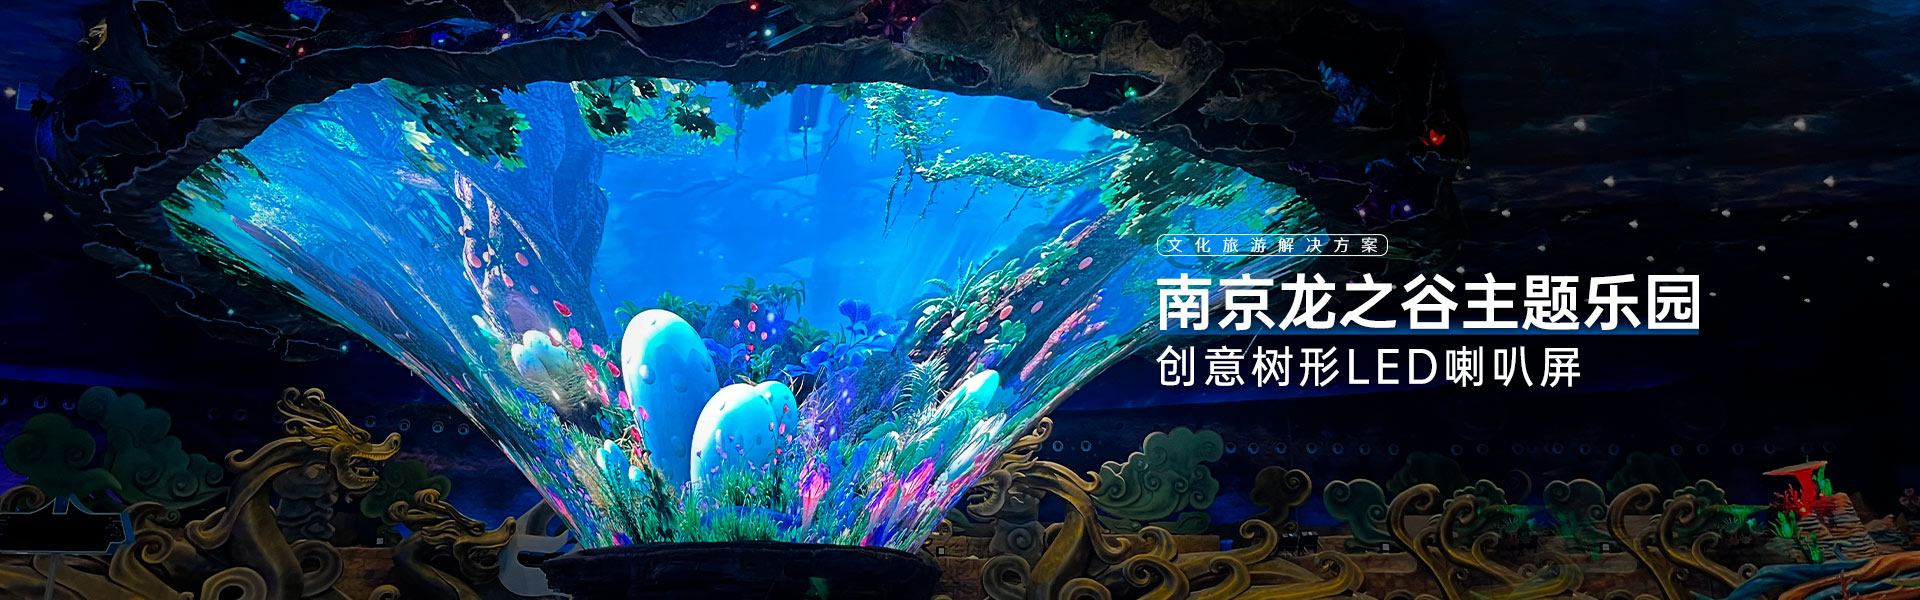 广州新大新1200平米裸眼3D屏